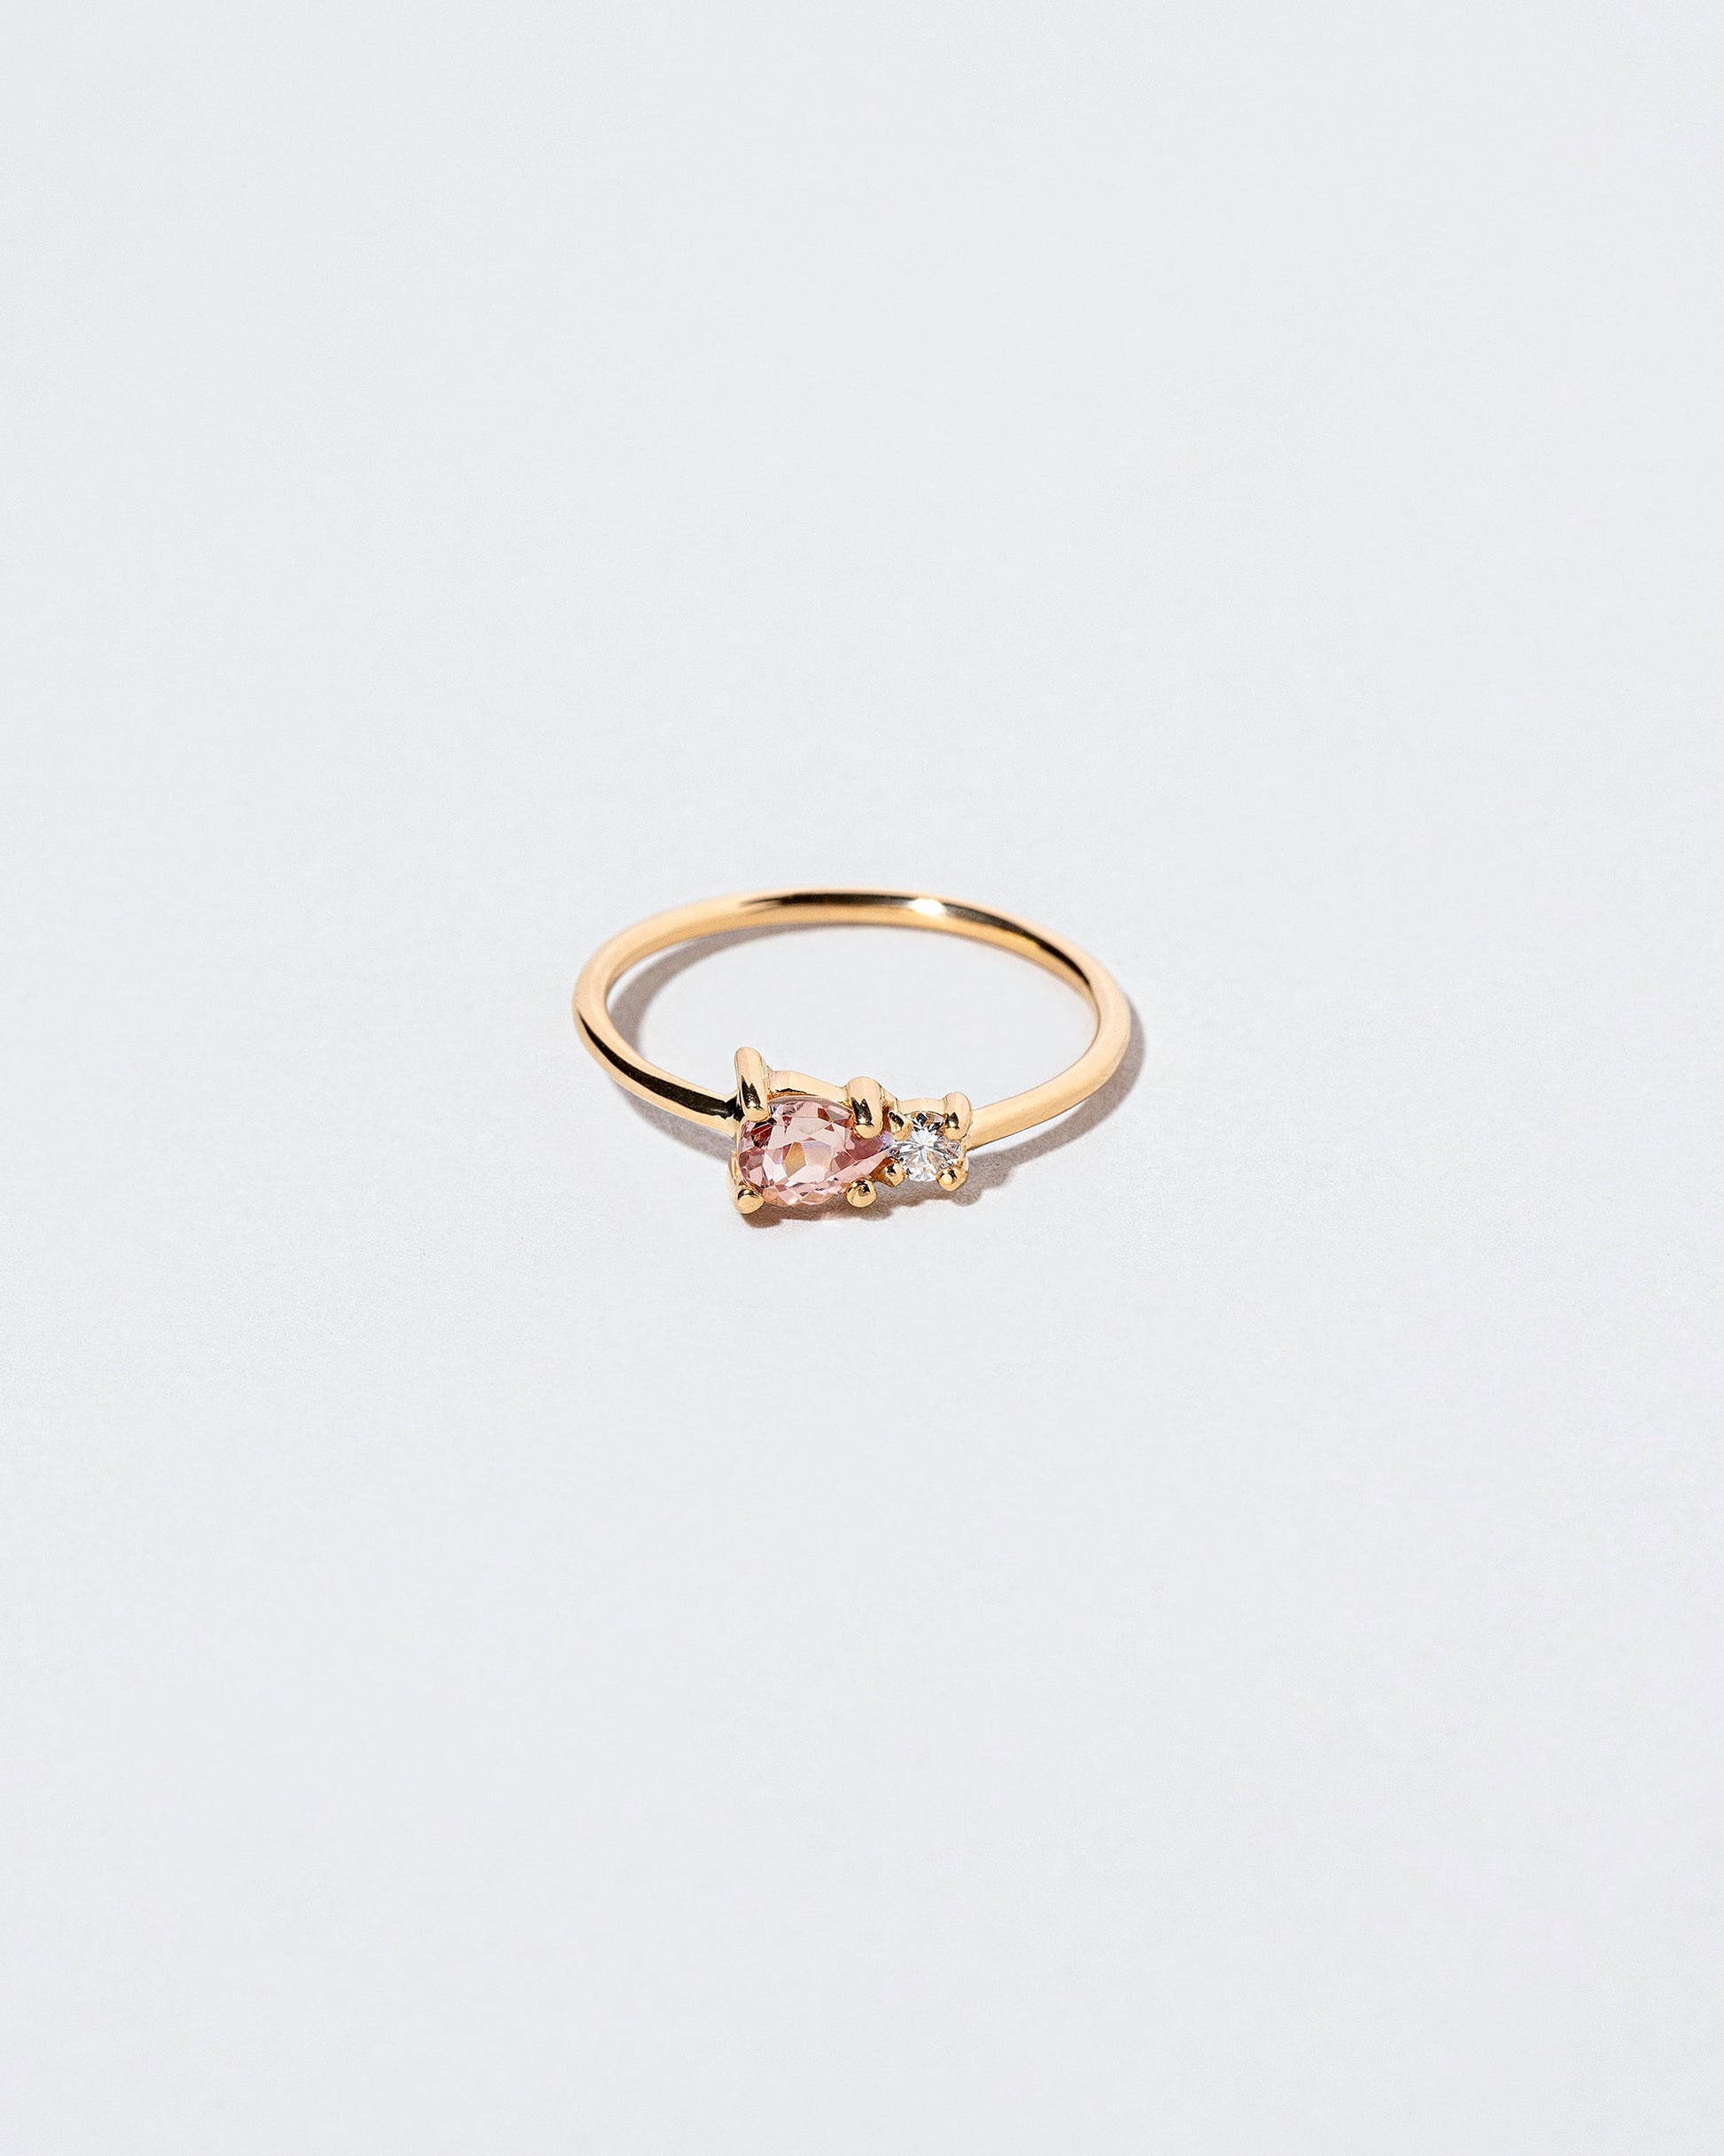  Teardrop Ring - Lotus Garnet on light color background.